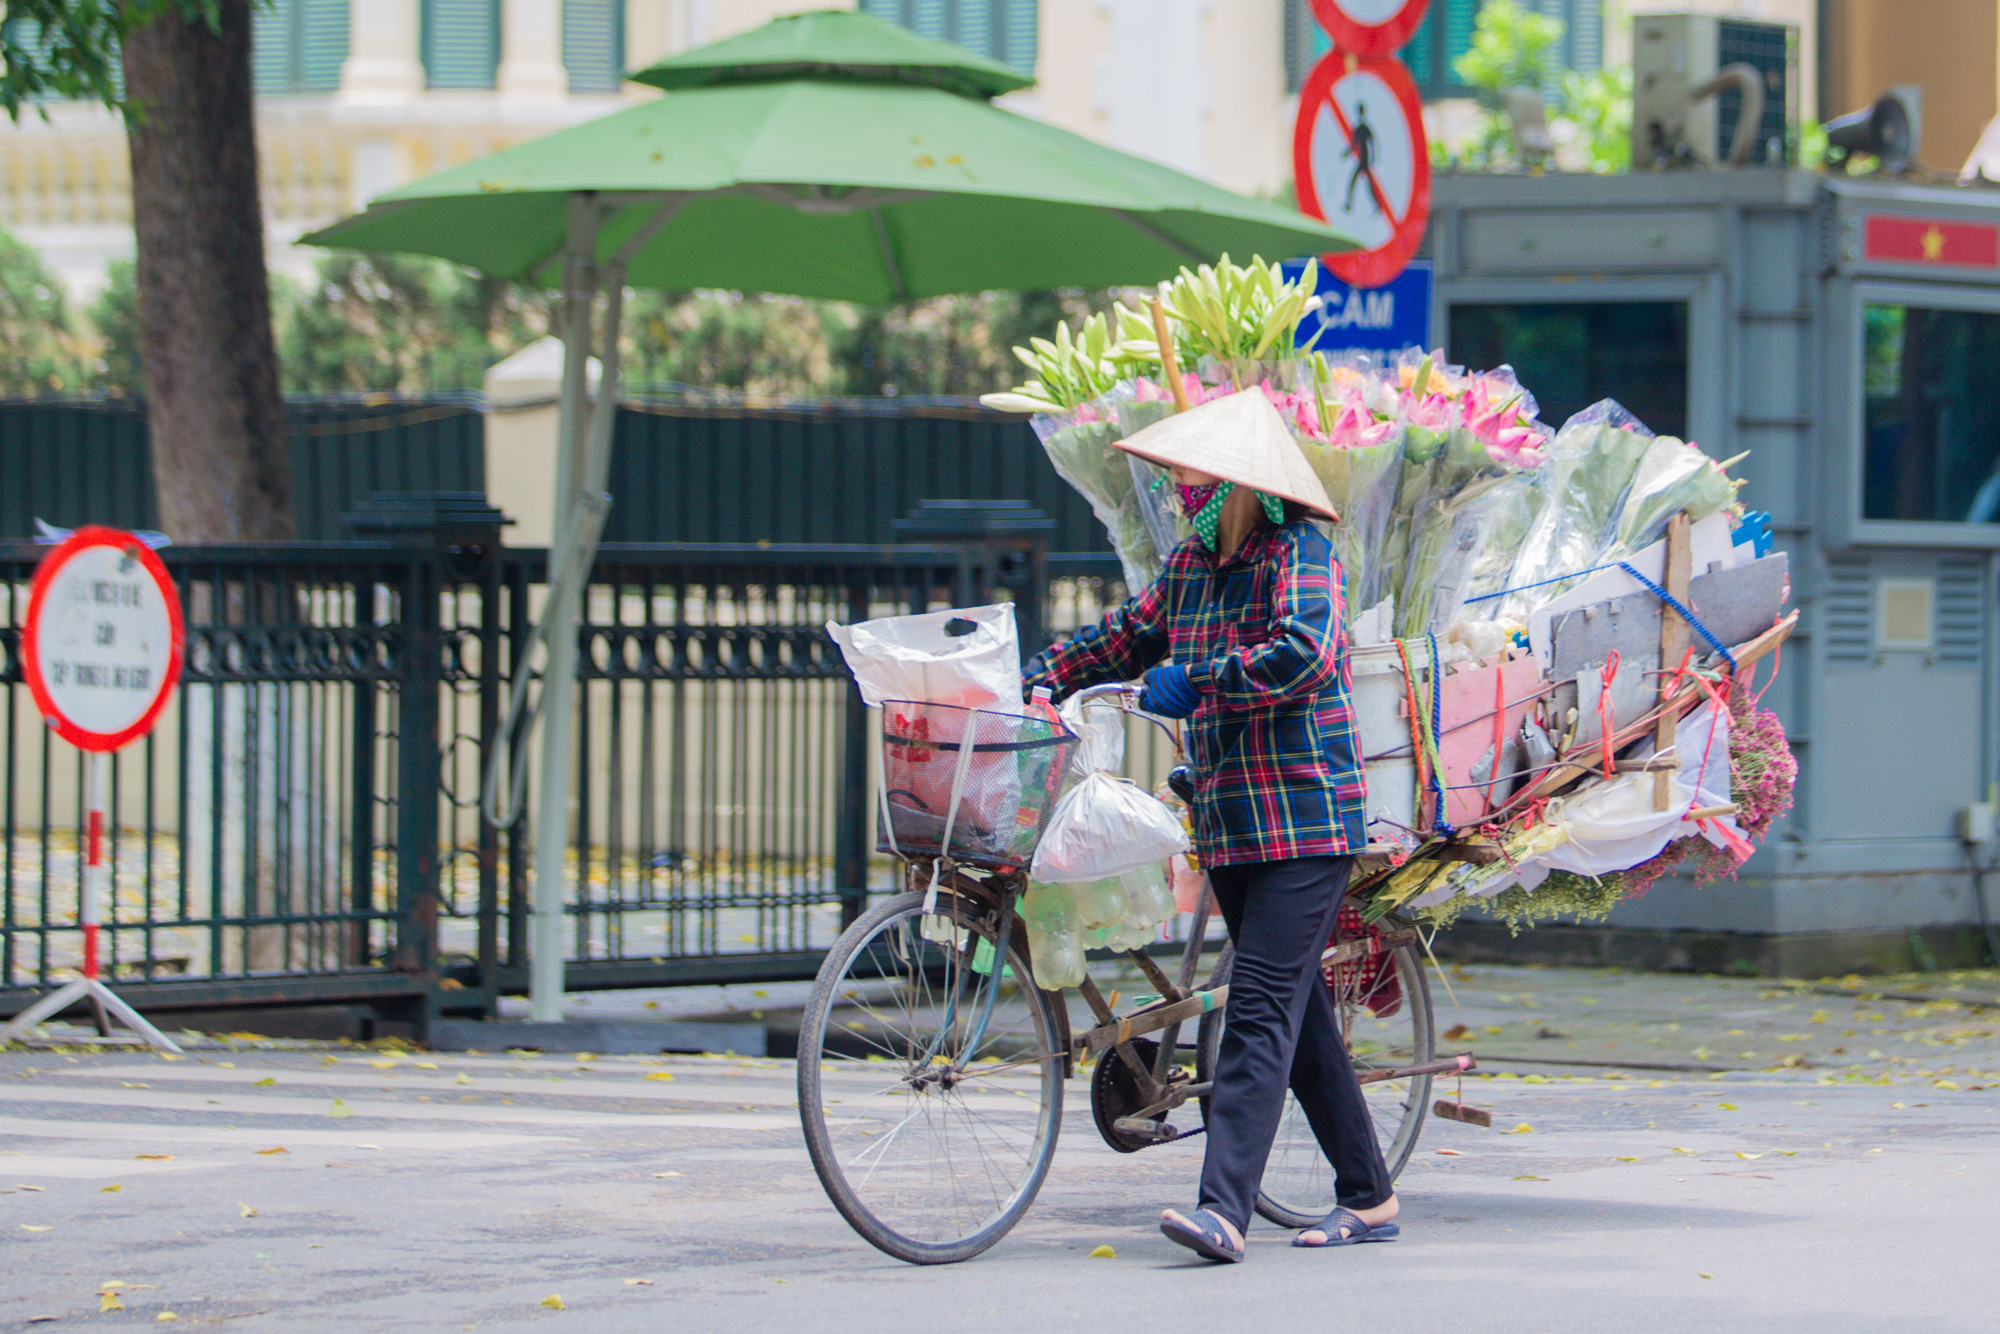 Hoa sen phố là một trong những cảnh quan đẹp nhất của đời sống đô thị Việt Nam. Bạn có thể dễ dàng tìm thấy những bông hoa sen nở rộ trên phố, tạo nên bức tranh thơ mộng, lãng mạn.